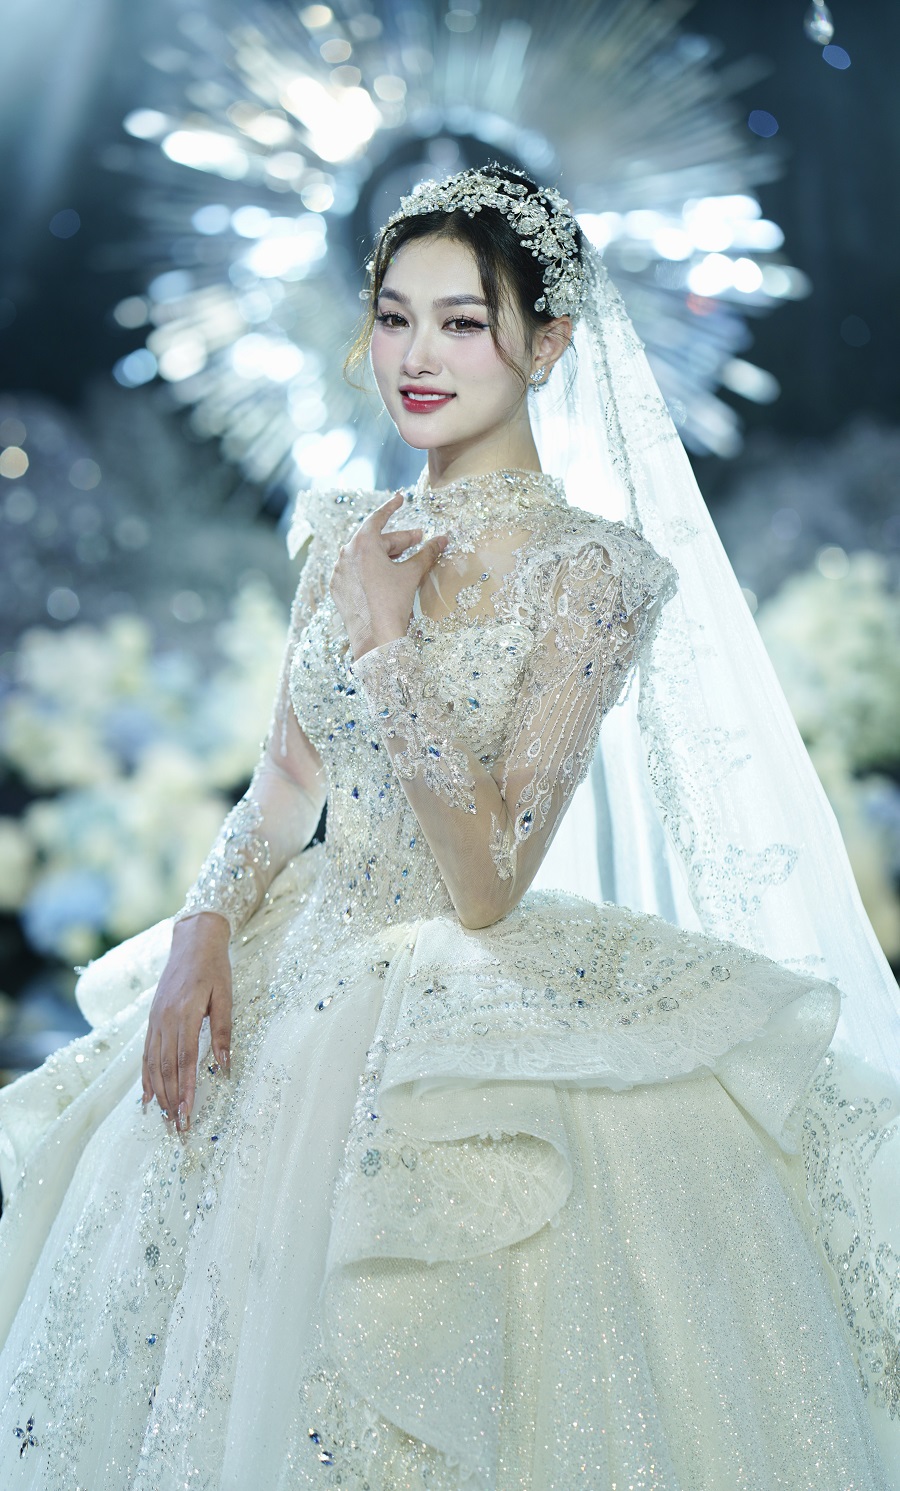 Lộ diện cô dâu trong đám cưới ở Ba Đình Hà Nội, từng đạt top cao trong các cuộc thi nhan sắc- Ảnh 1.